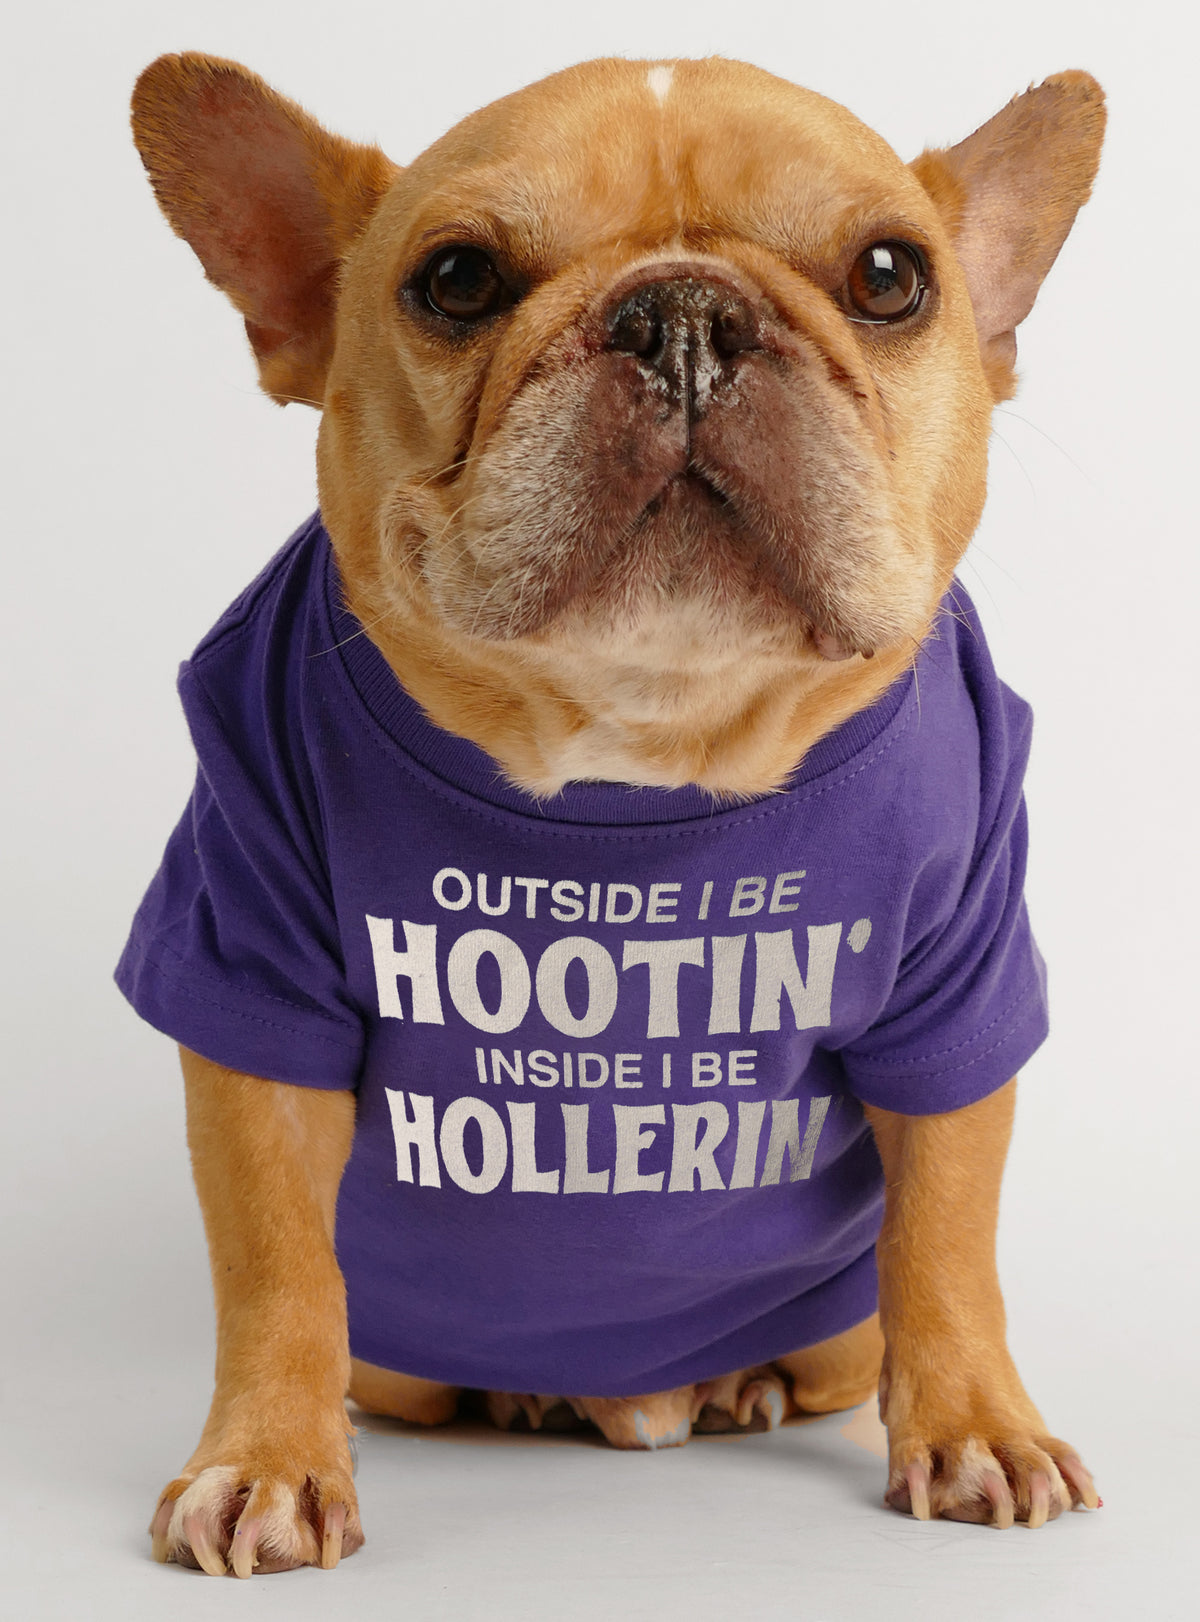 Hootin And Hollerin Dog Tee